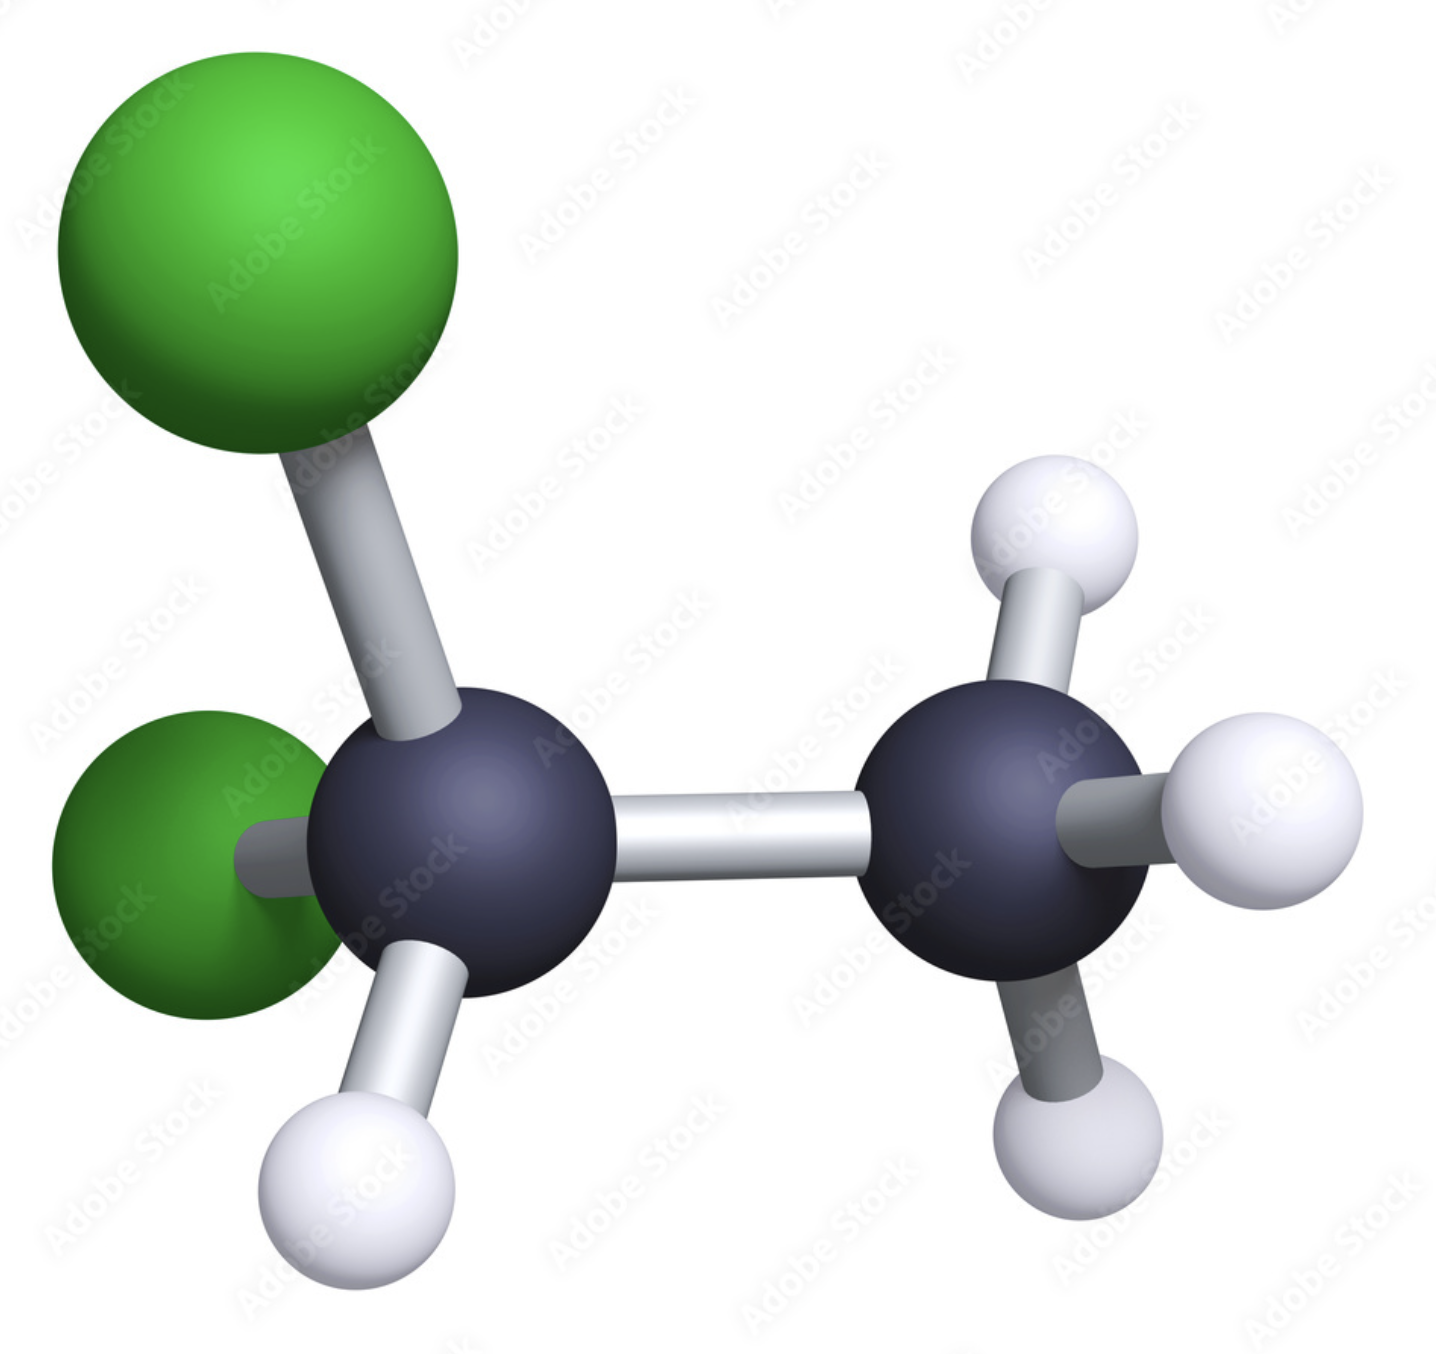  Ethylene Dichloride (EDC) là gì và ứng dụng trong cuộc sống